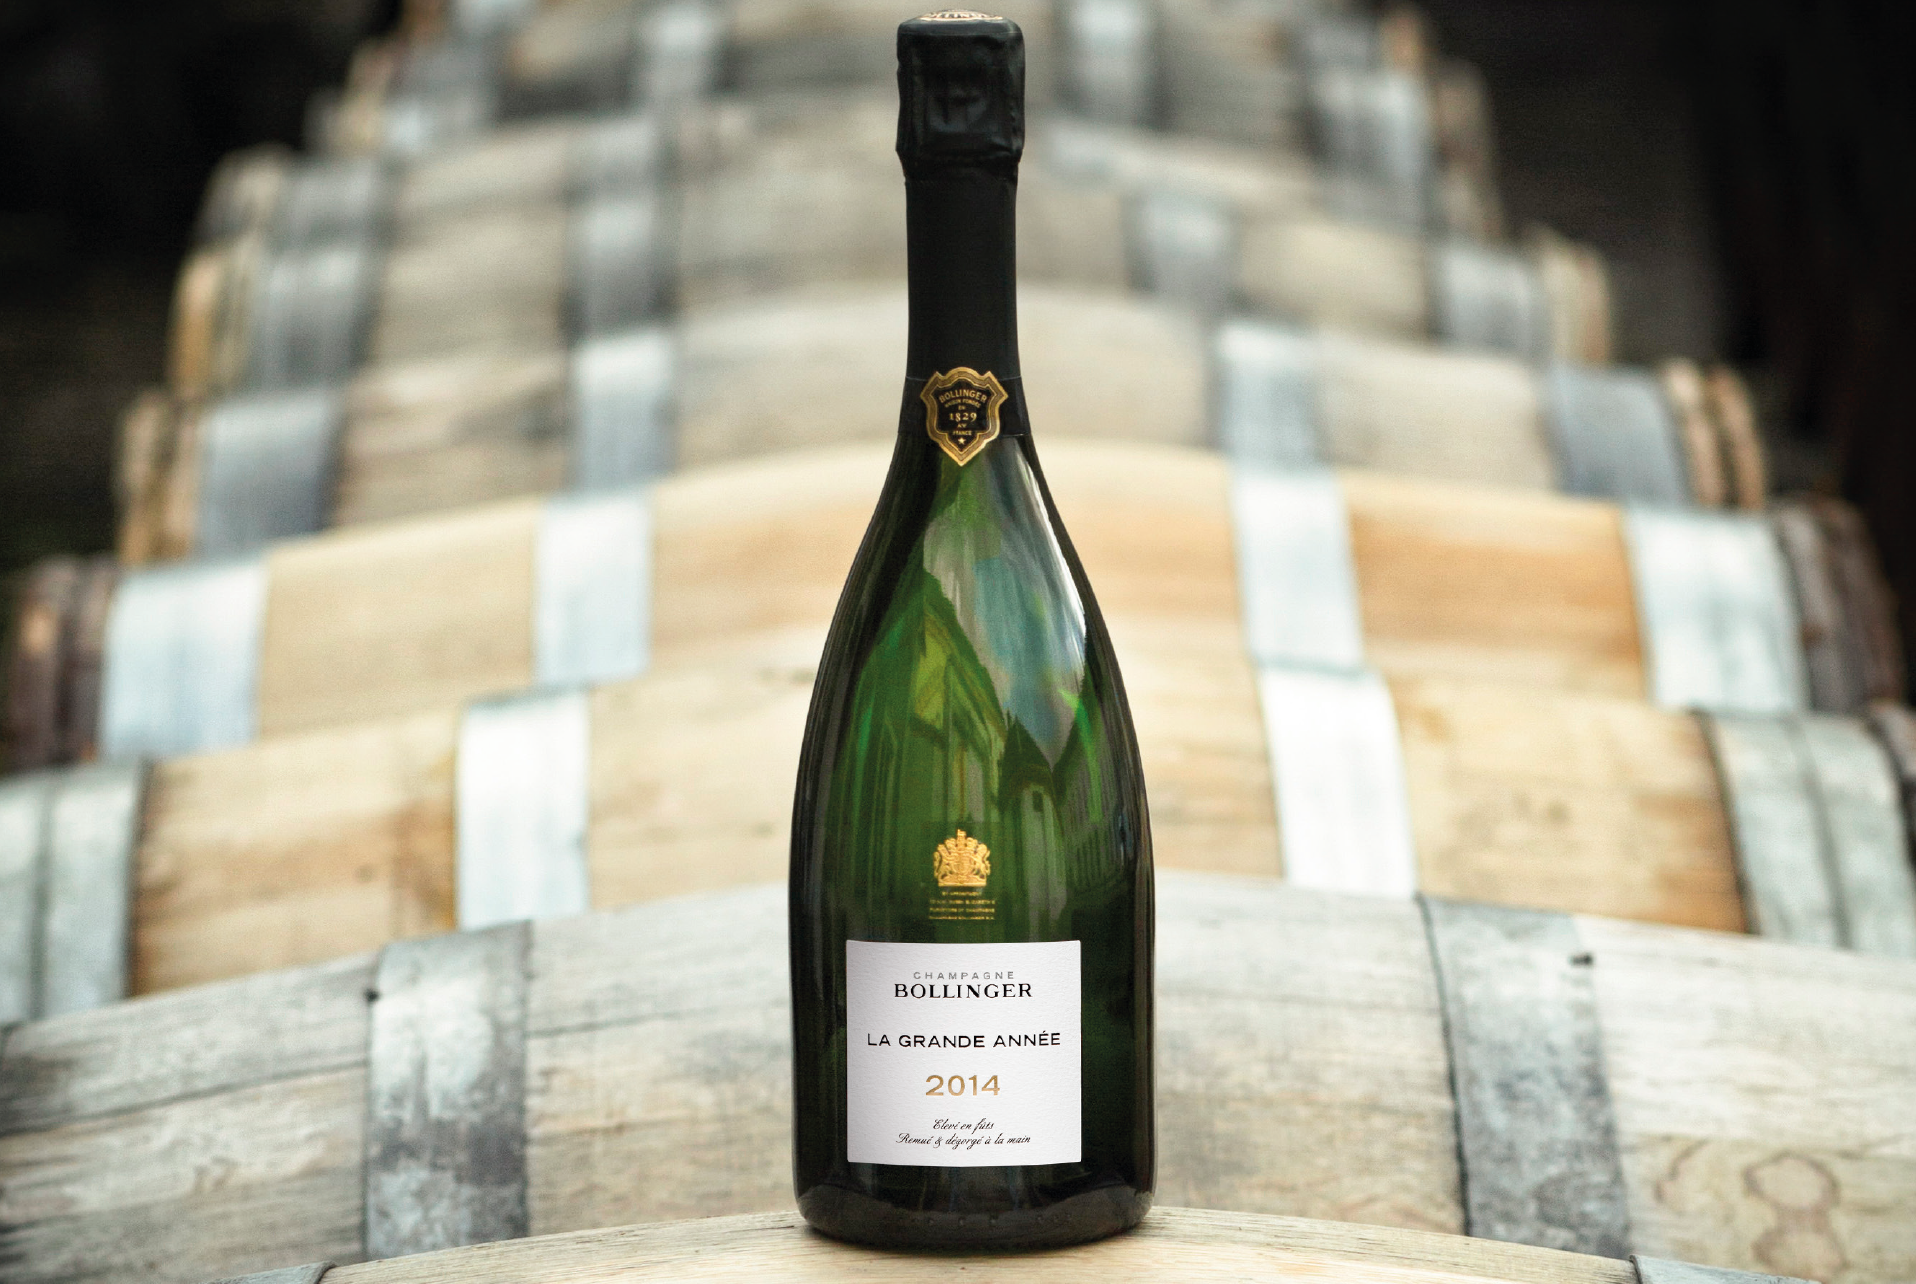 Aÿ-Champagne : Bollinger, l’intensité et la minéralité du Millésime 2014